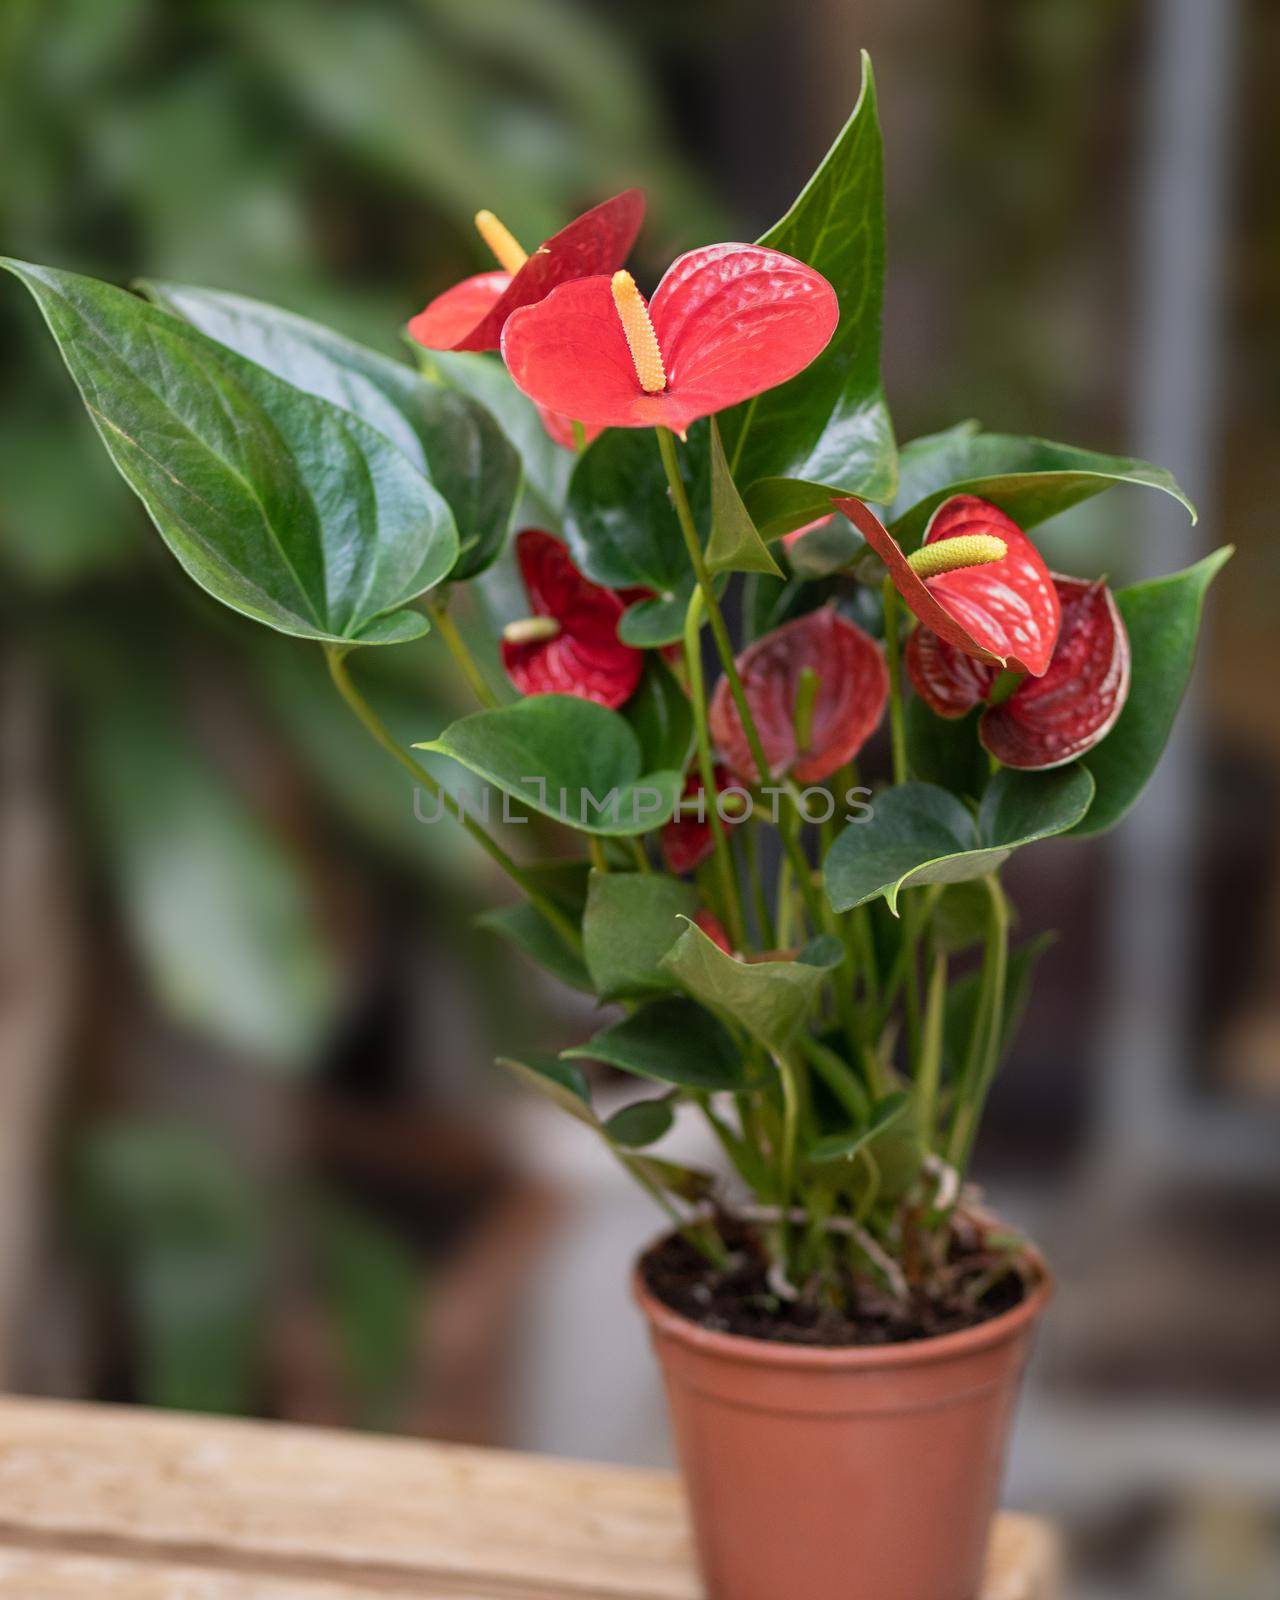 Red Anthurium Laceleaf flower plant in pot